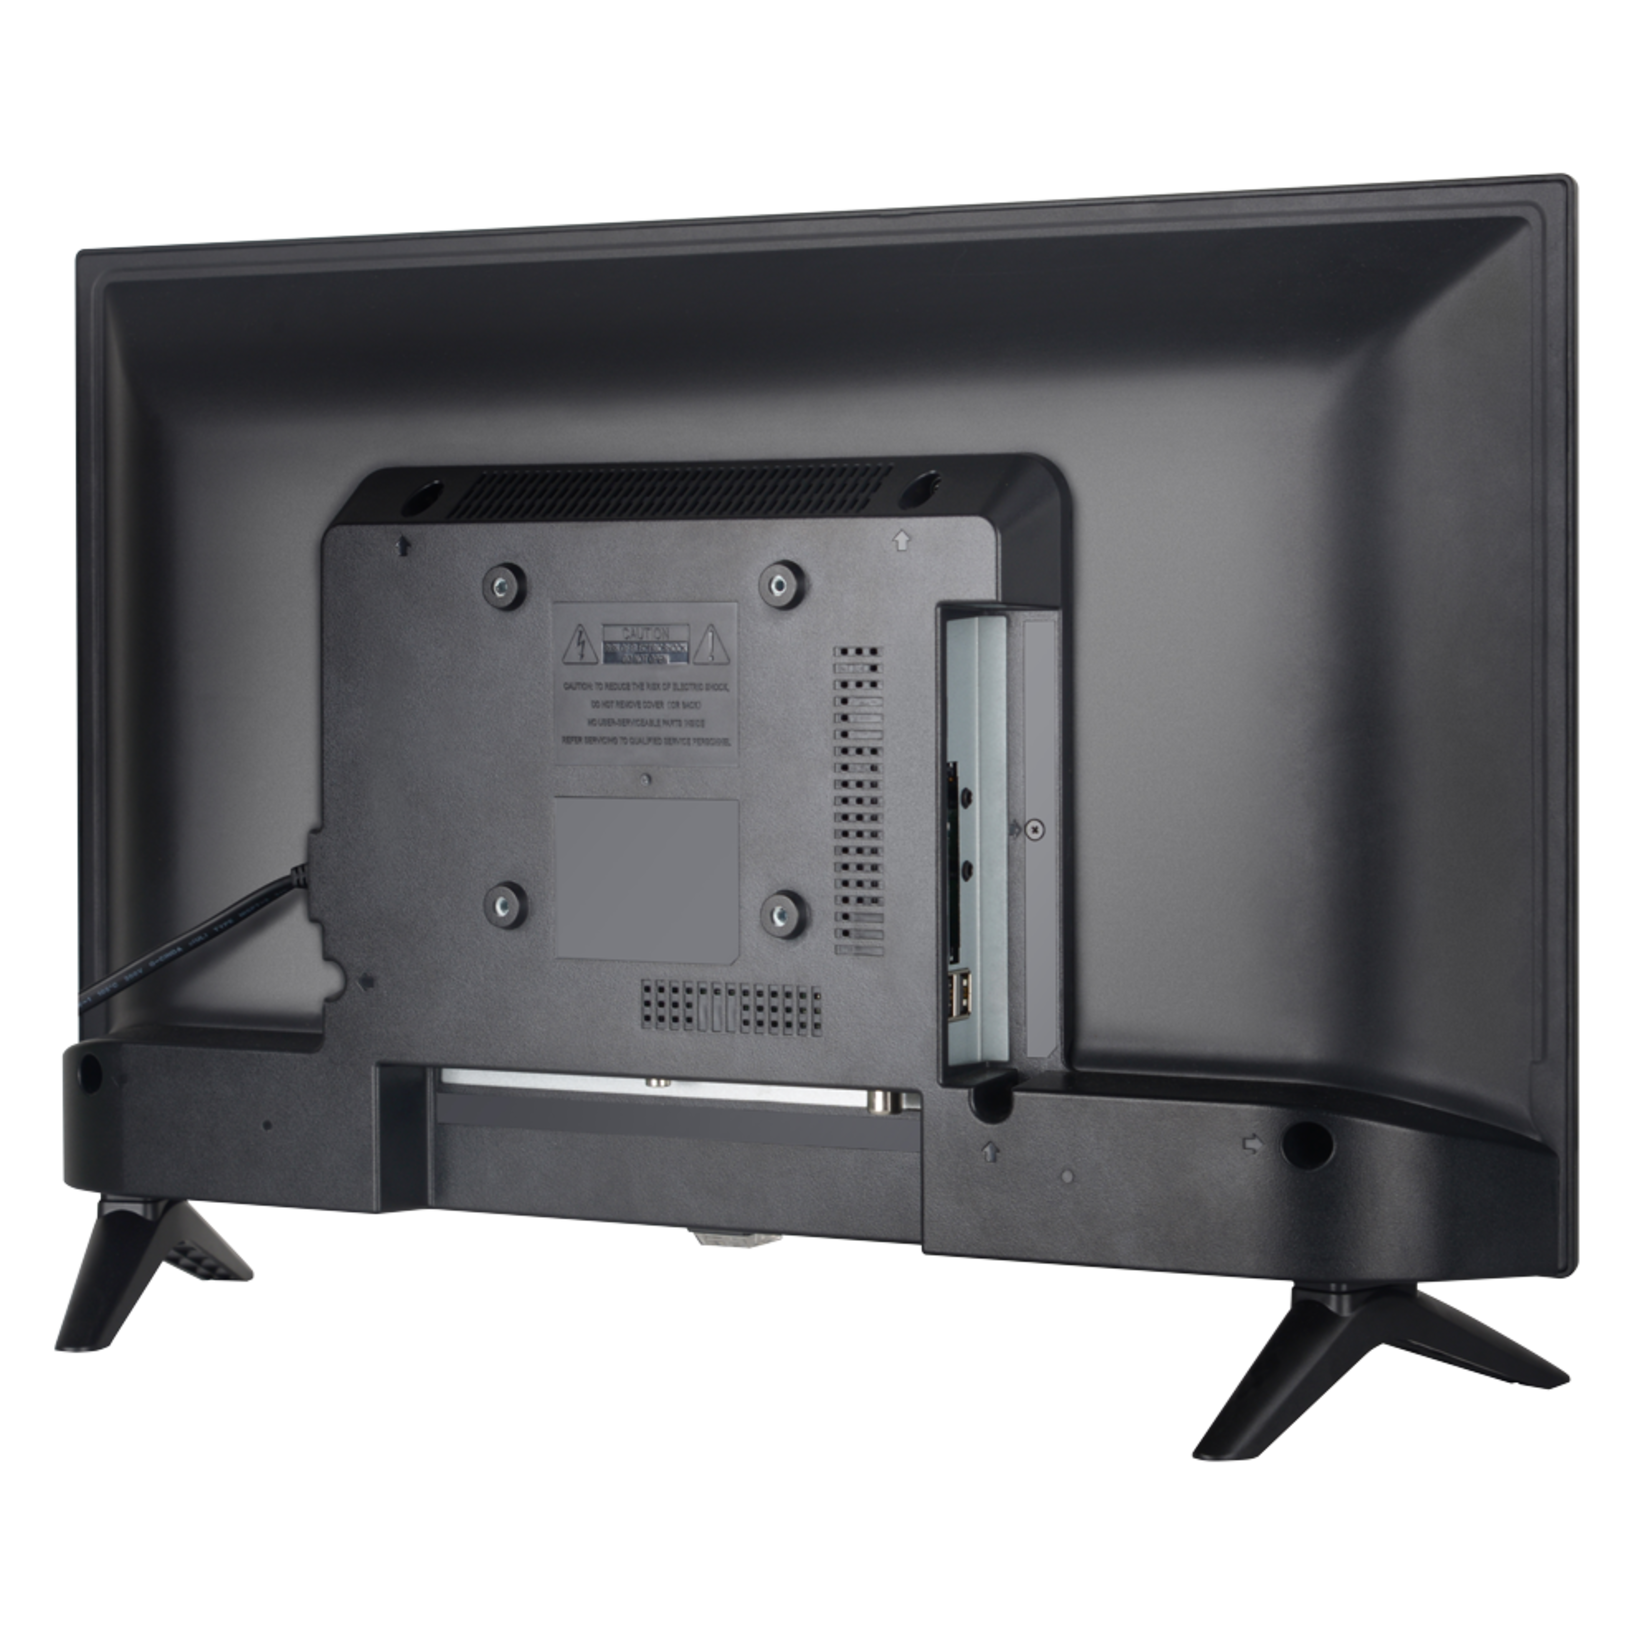 RCA RB24H1 24 inch LED TV met Triple tuner, HDMI en USB-aanluiting